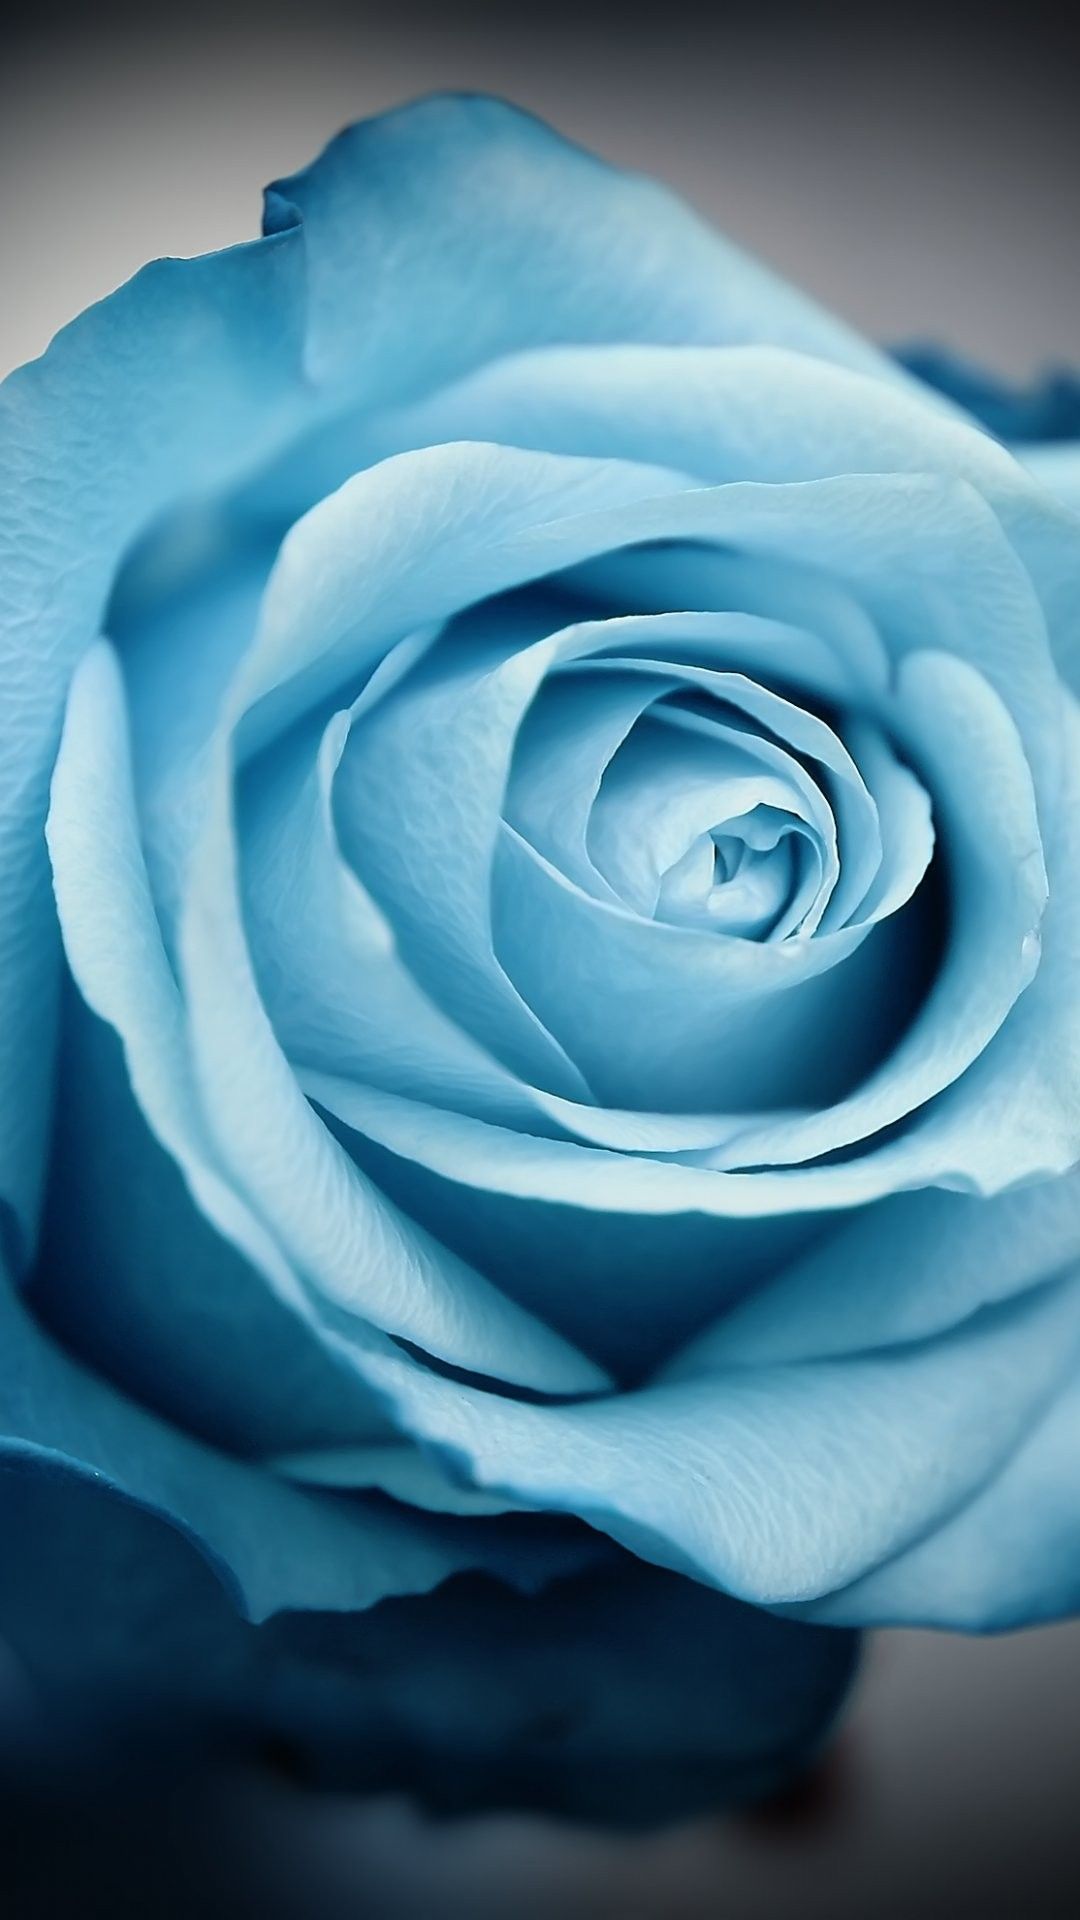 jolis fonds d'écran pour iphone 6,rose,bleu,fleur,roses de jardin,pétale